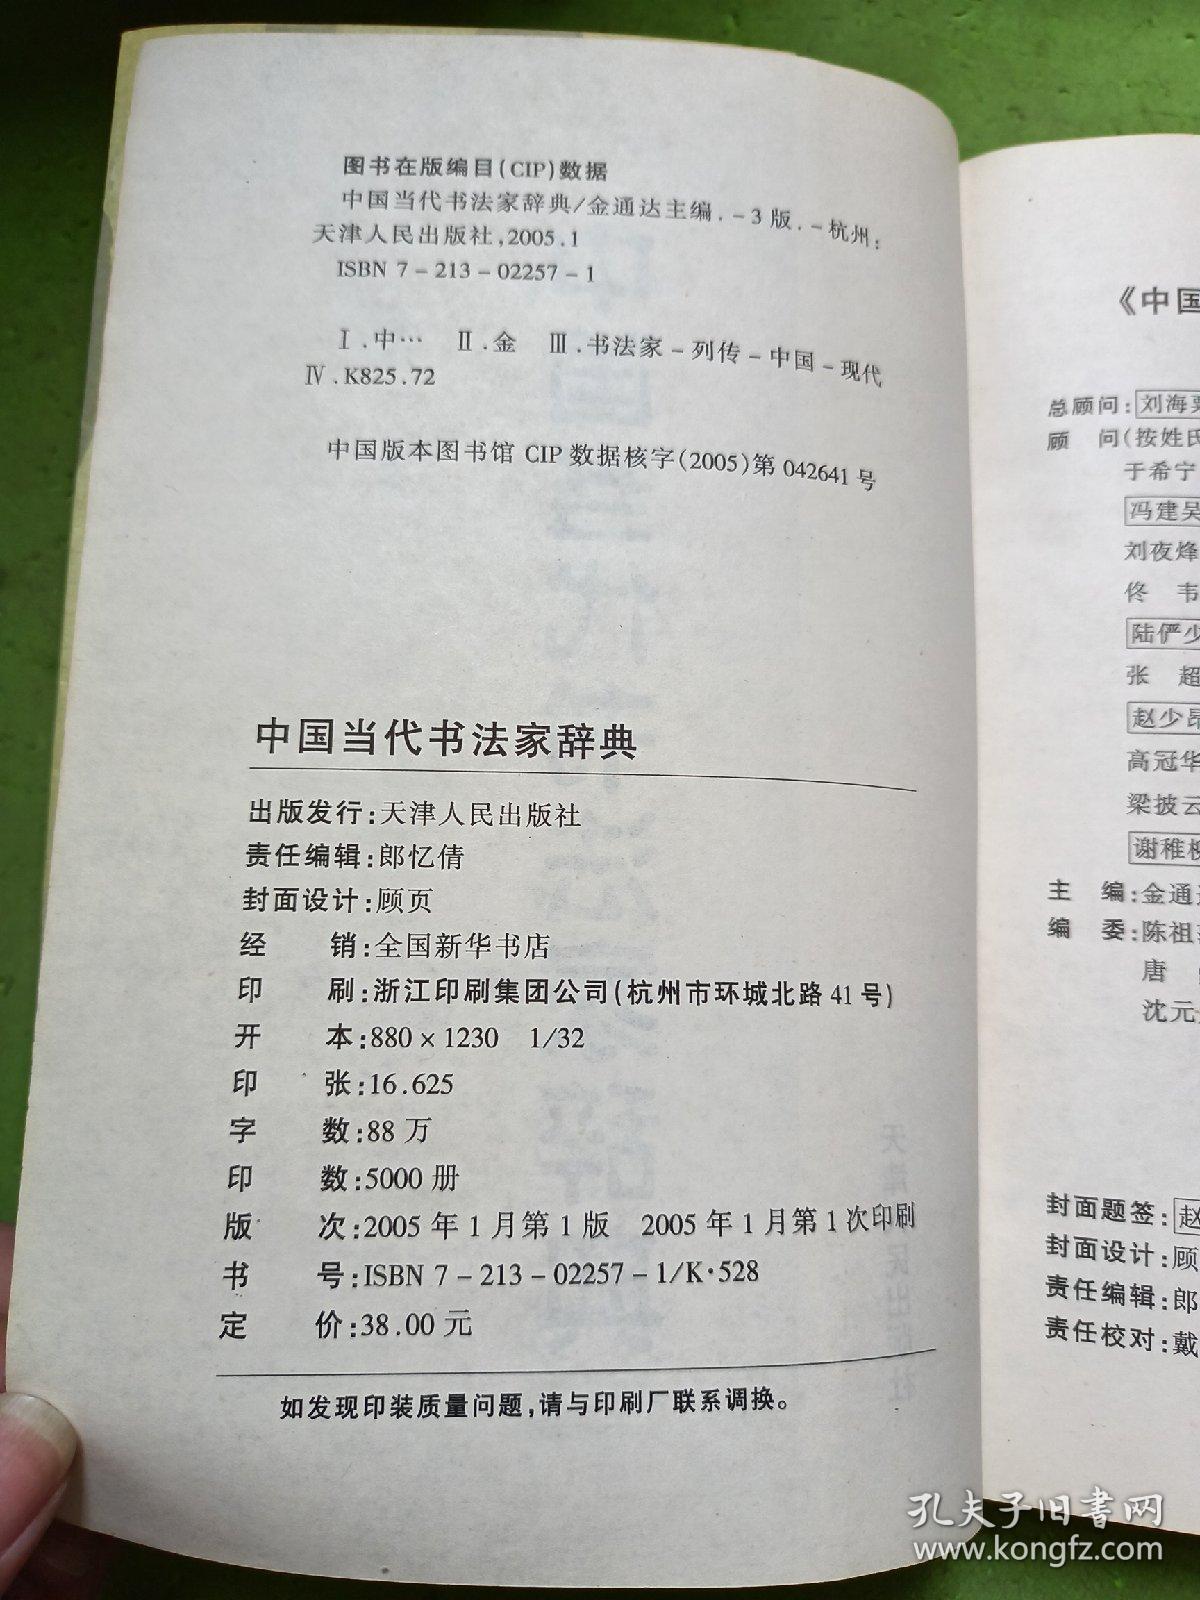 中国当代书法家辞典